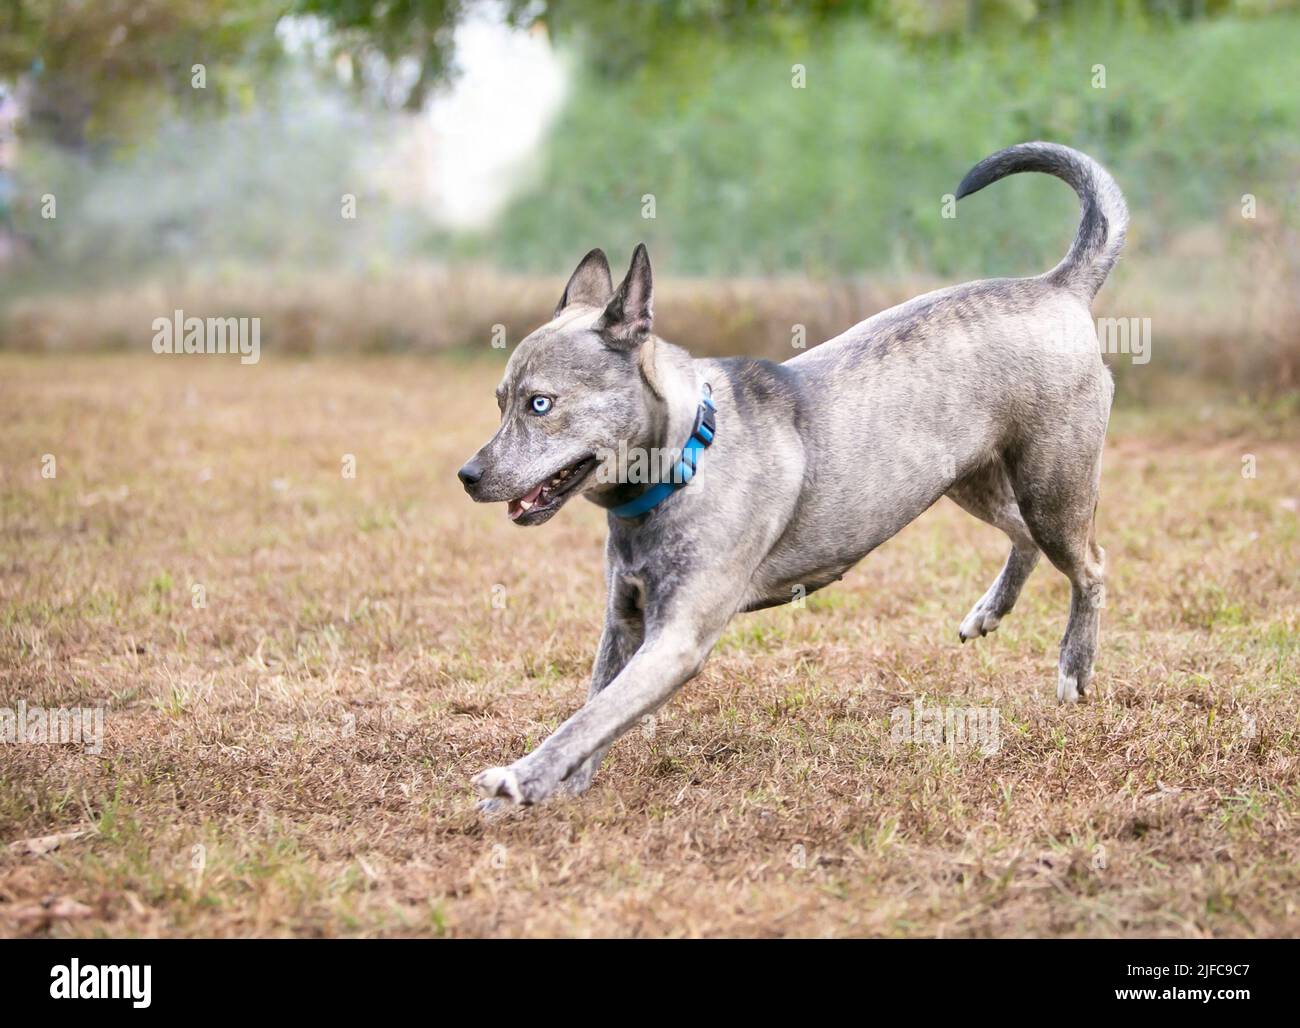 Un perro de ganado australiano de Terrier x raza mixta corriendo al aire libre Foto de stock